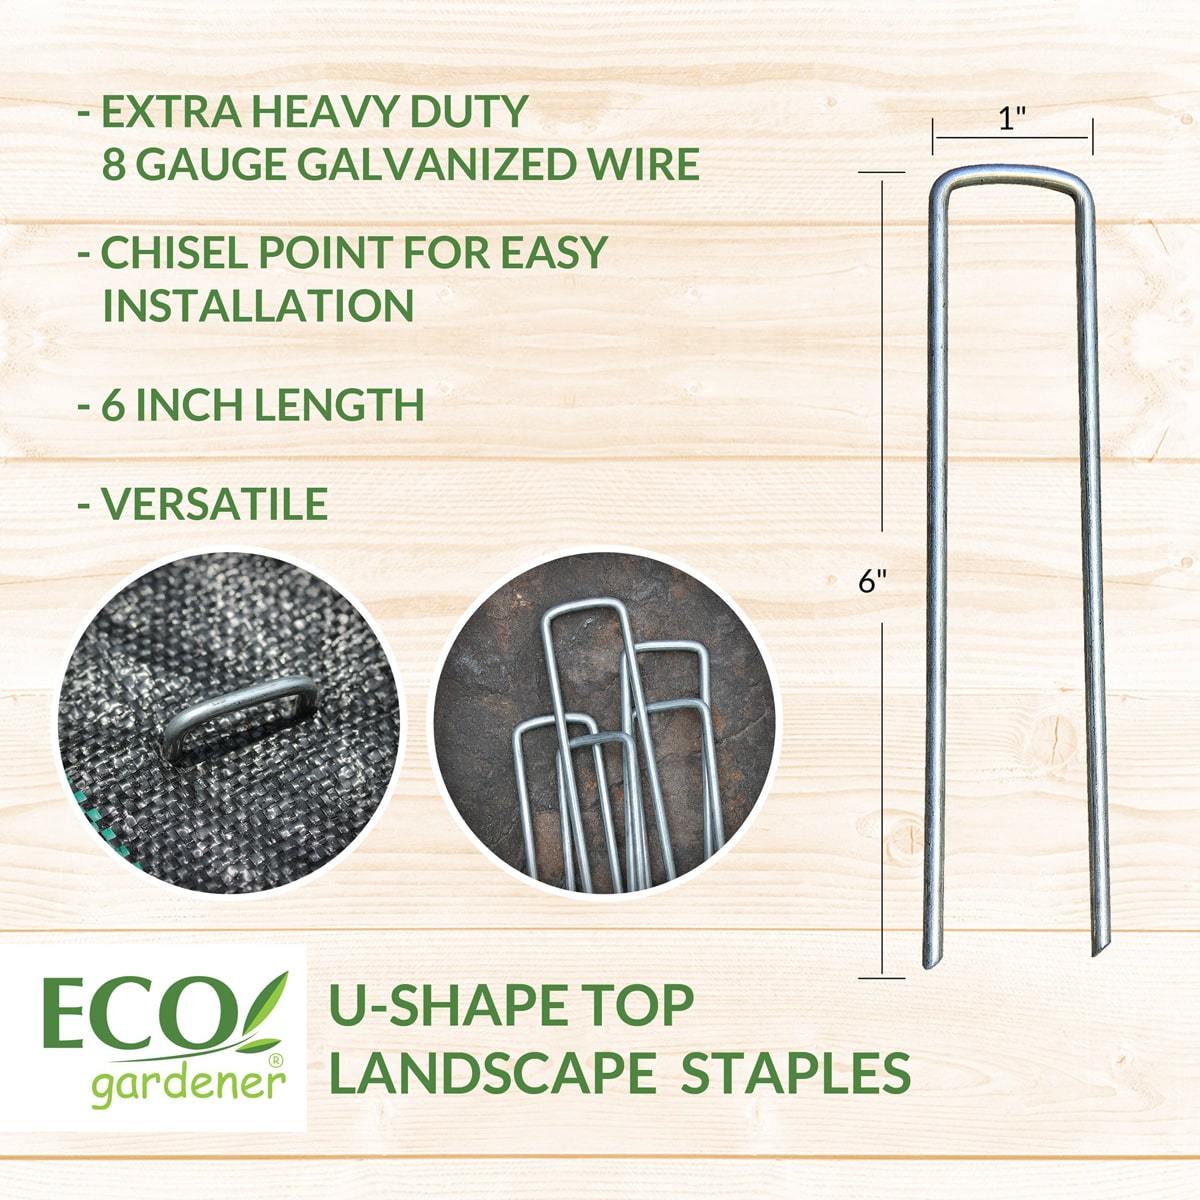 Detailed information for Ecogardener landscape staple chisel point